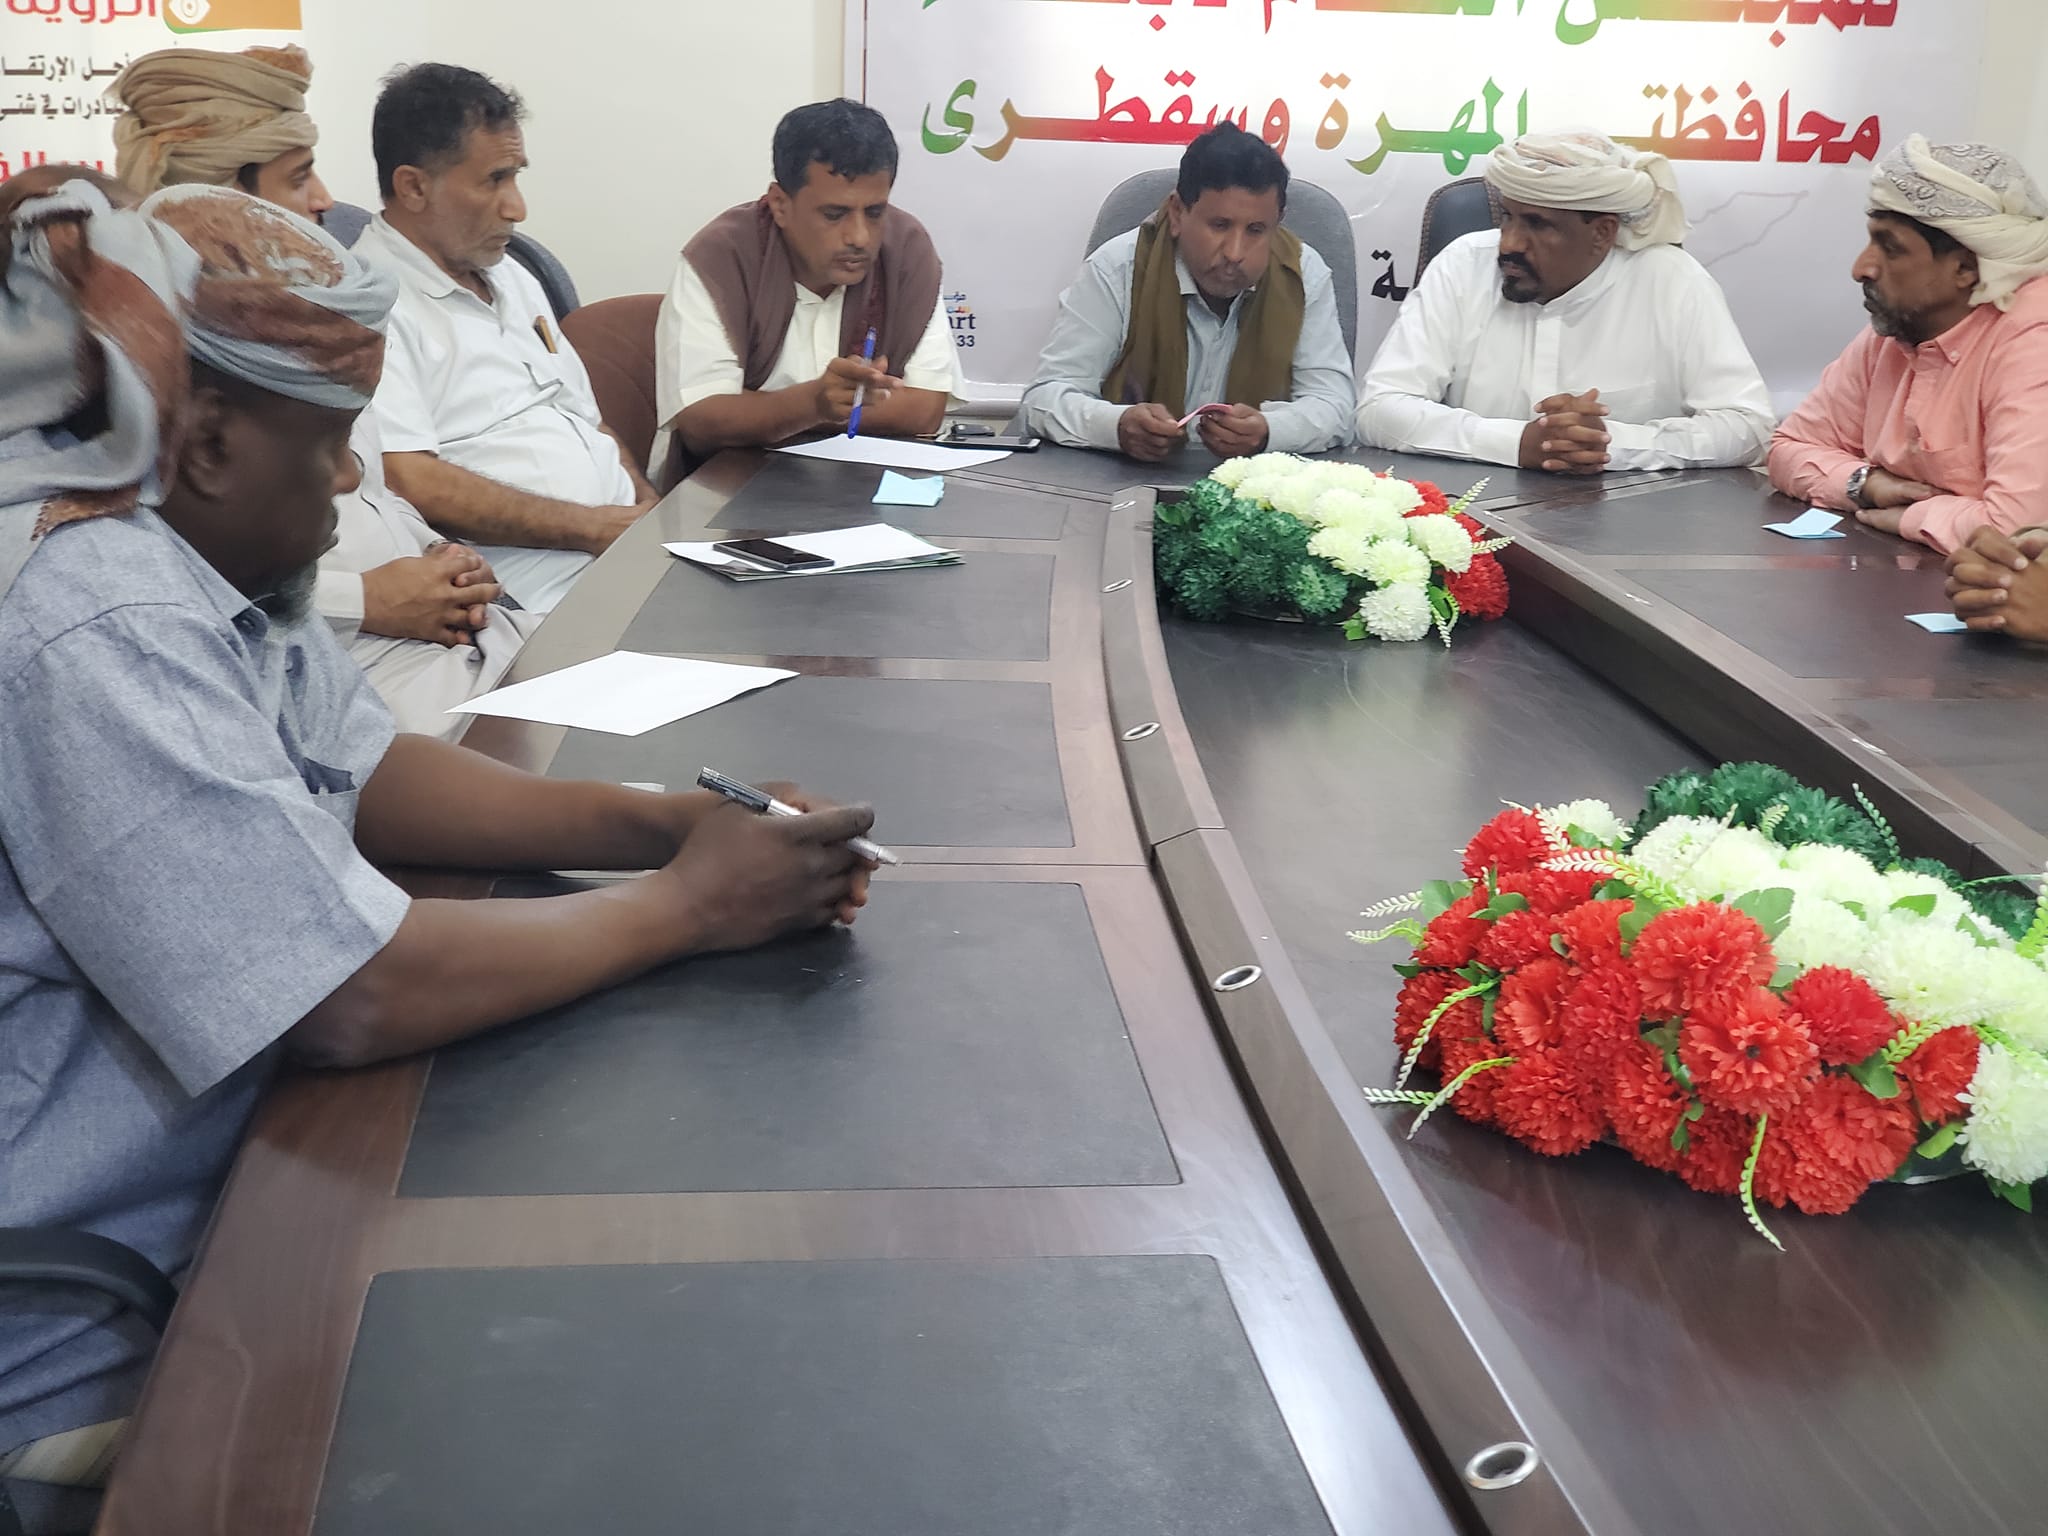 لجنة الاعتصام السلمي تناقش أخر المستجدات في محافظة المهرة وتحذر من يسعى بنشر الفوضى 